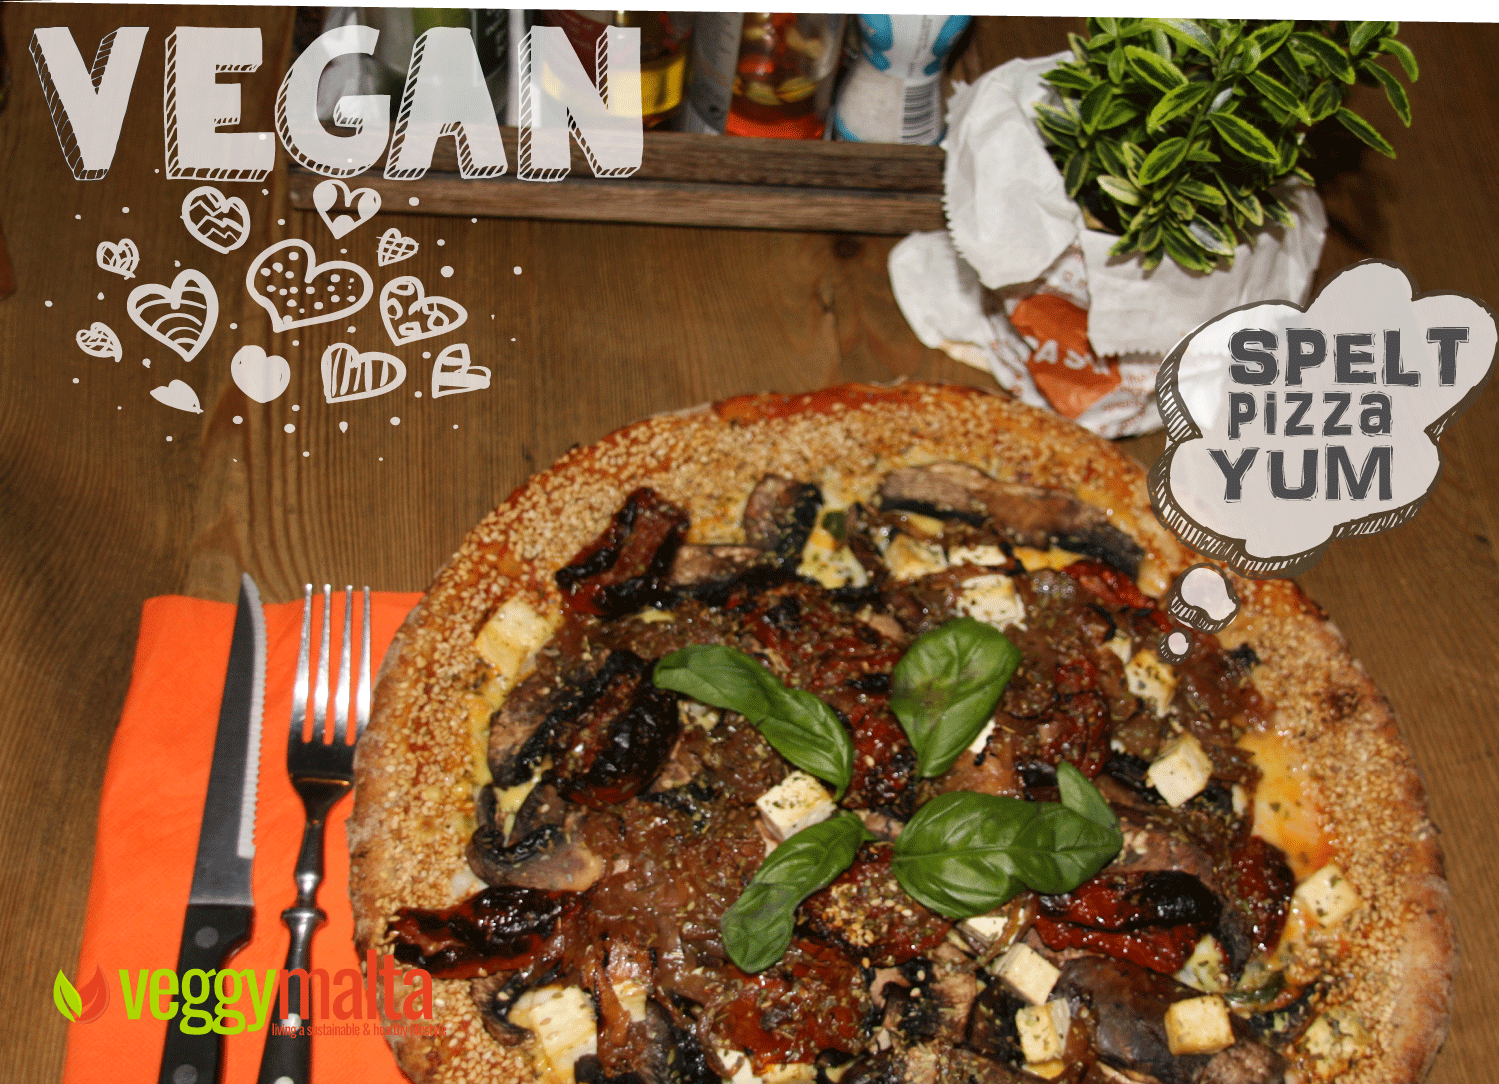 vegan-spelt-pizza-pash-restaurant-portobello-mushroom-pizza-yum